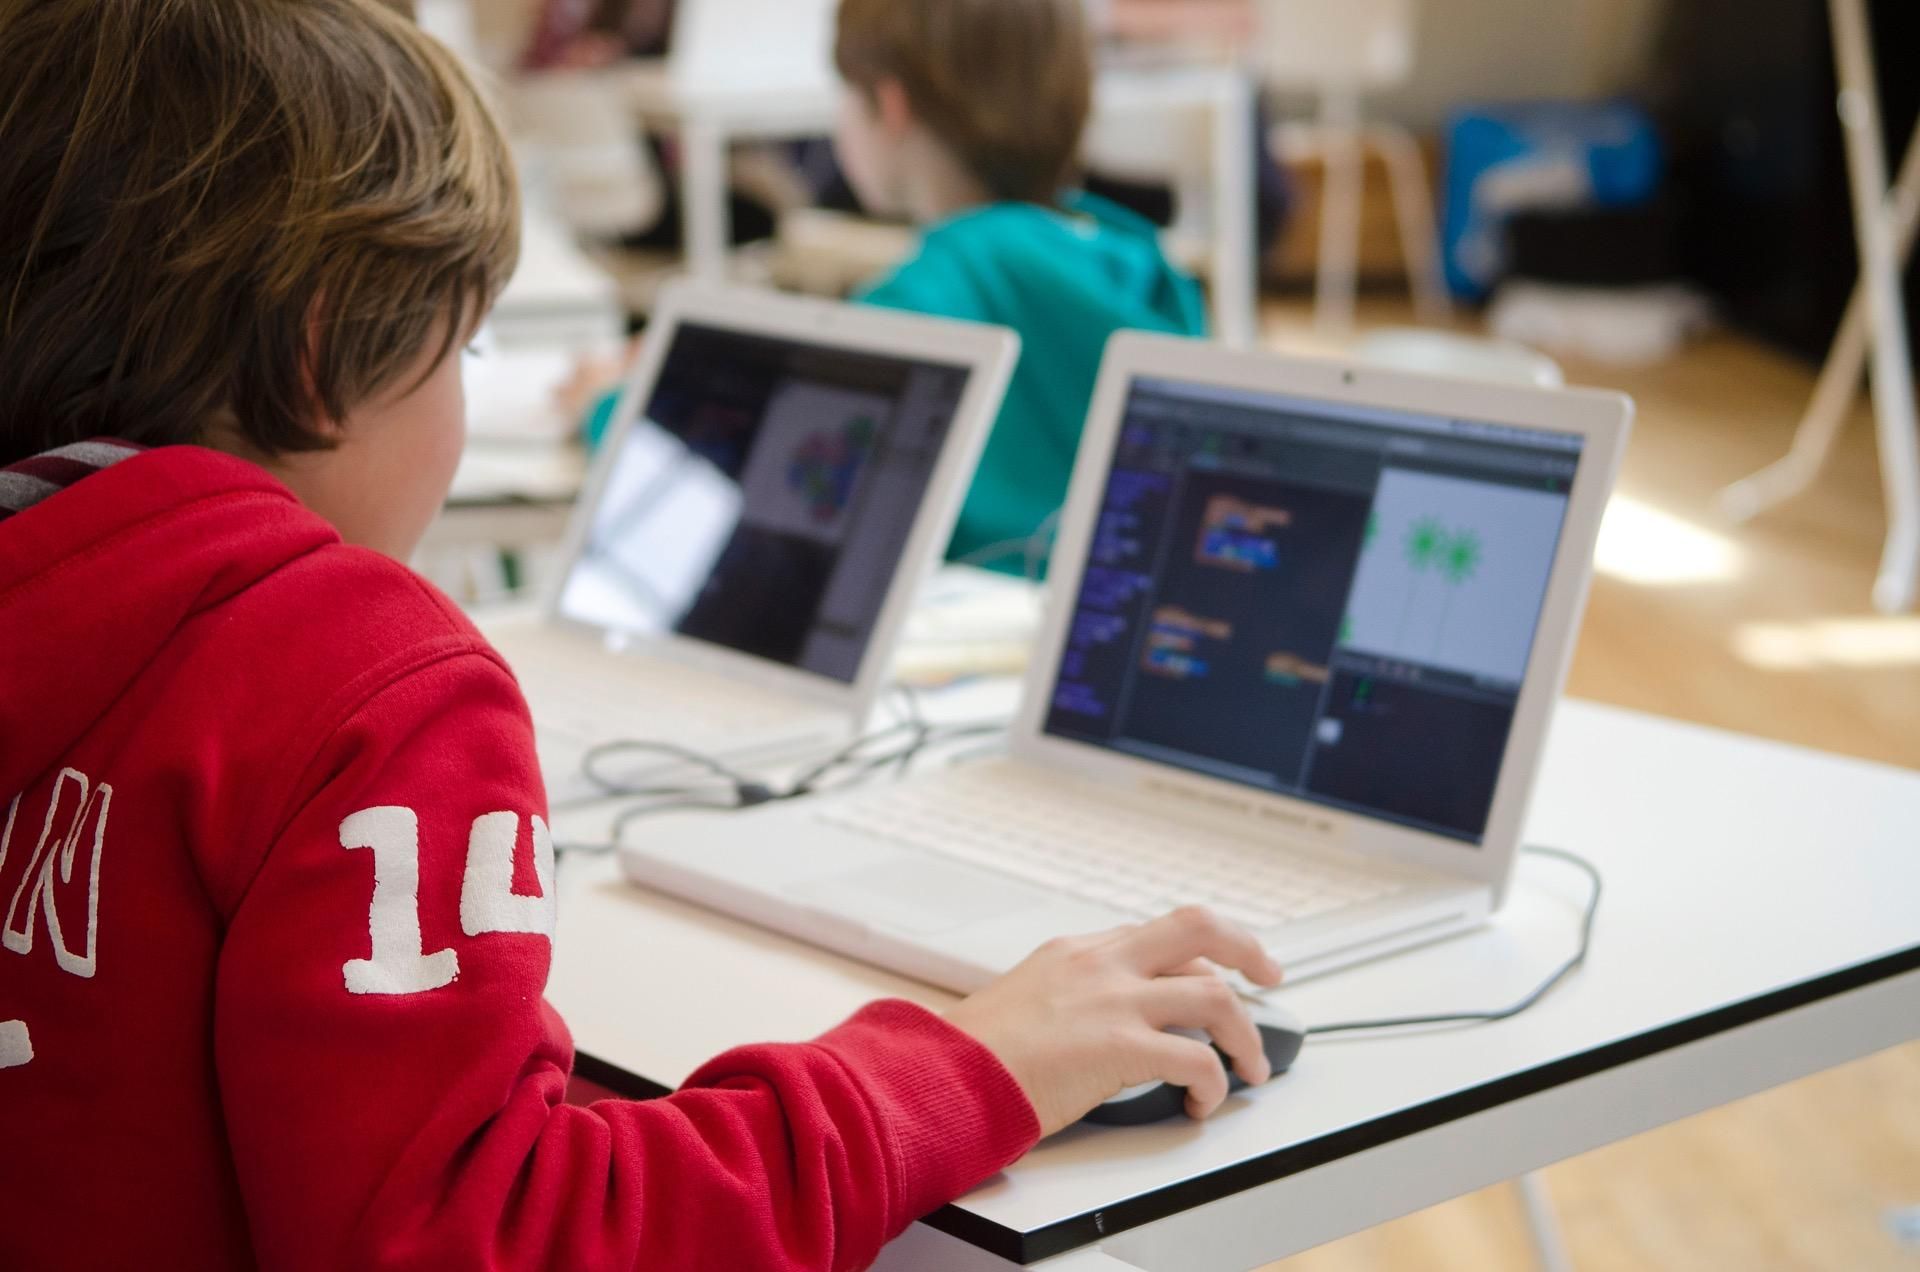 Обновленные уроки по информатике помогут детям найти себя в ИТ-специальностях, – Федоров